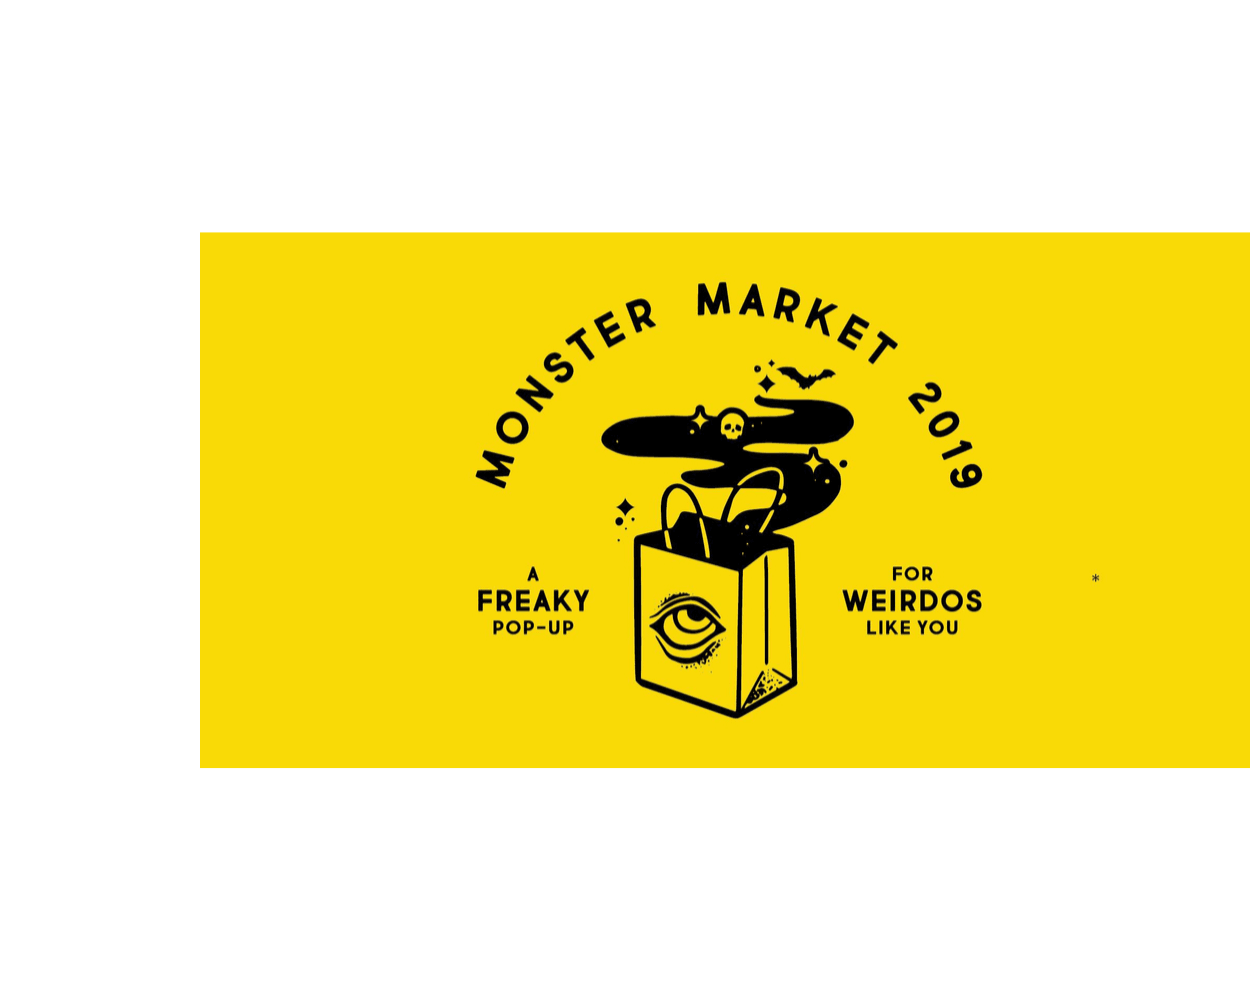 Monster Market